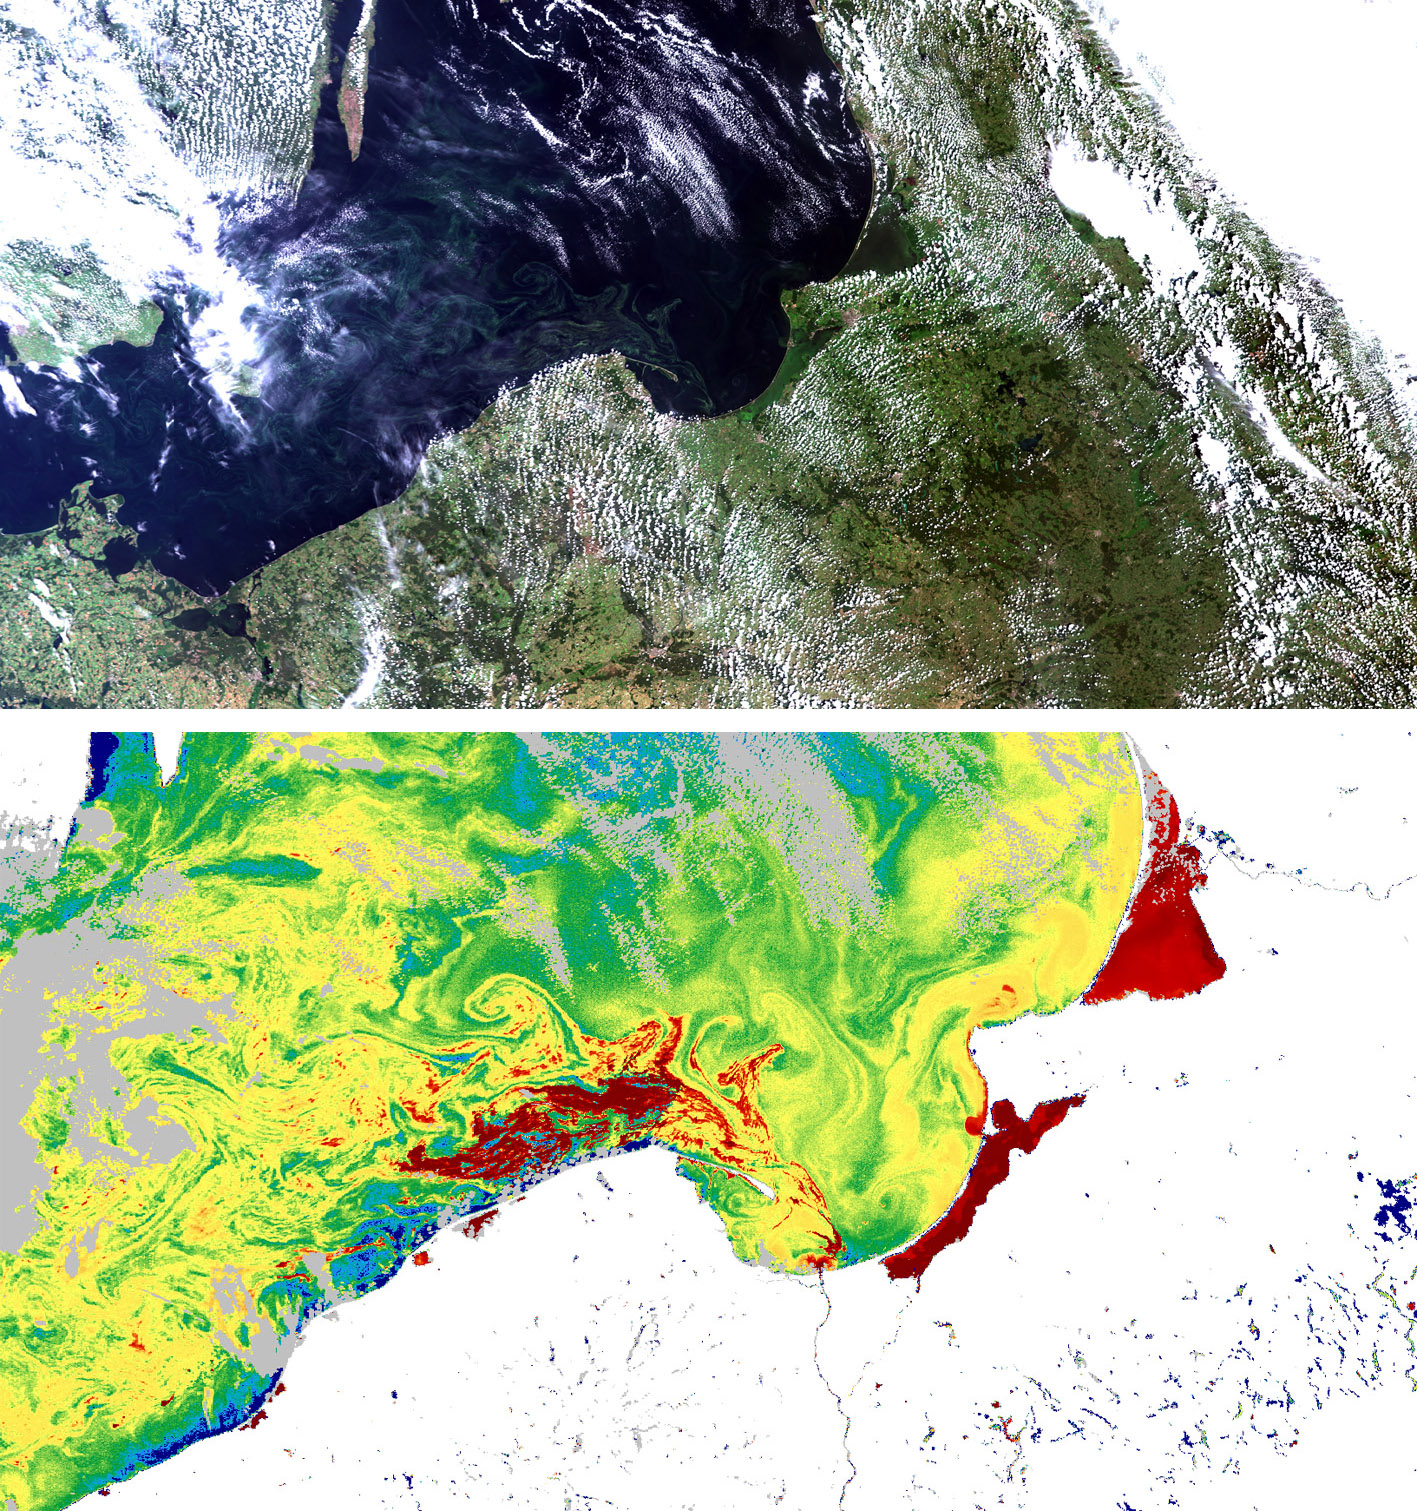 Obrazy z przelotu Sentinel-3; kompozycje barwne RGB True Colors. Subset 2 obejmuje całe nasze Wybrzeże, a Subset 4 jego wschodnią część. Opracowano w ZTS IMGW-PIB.